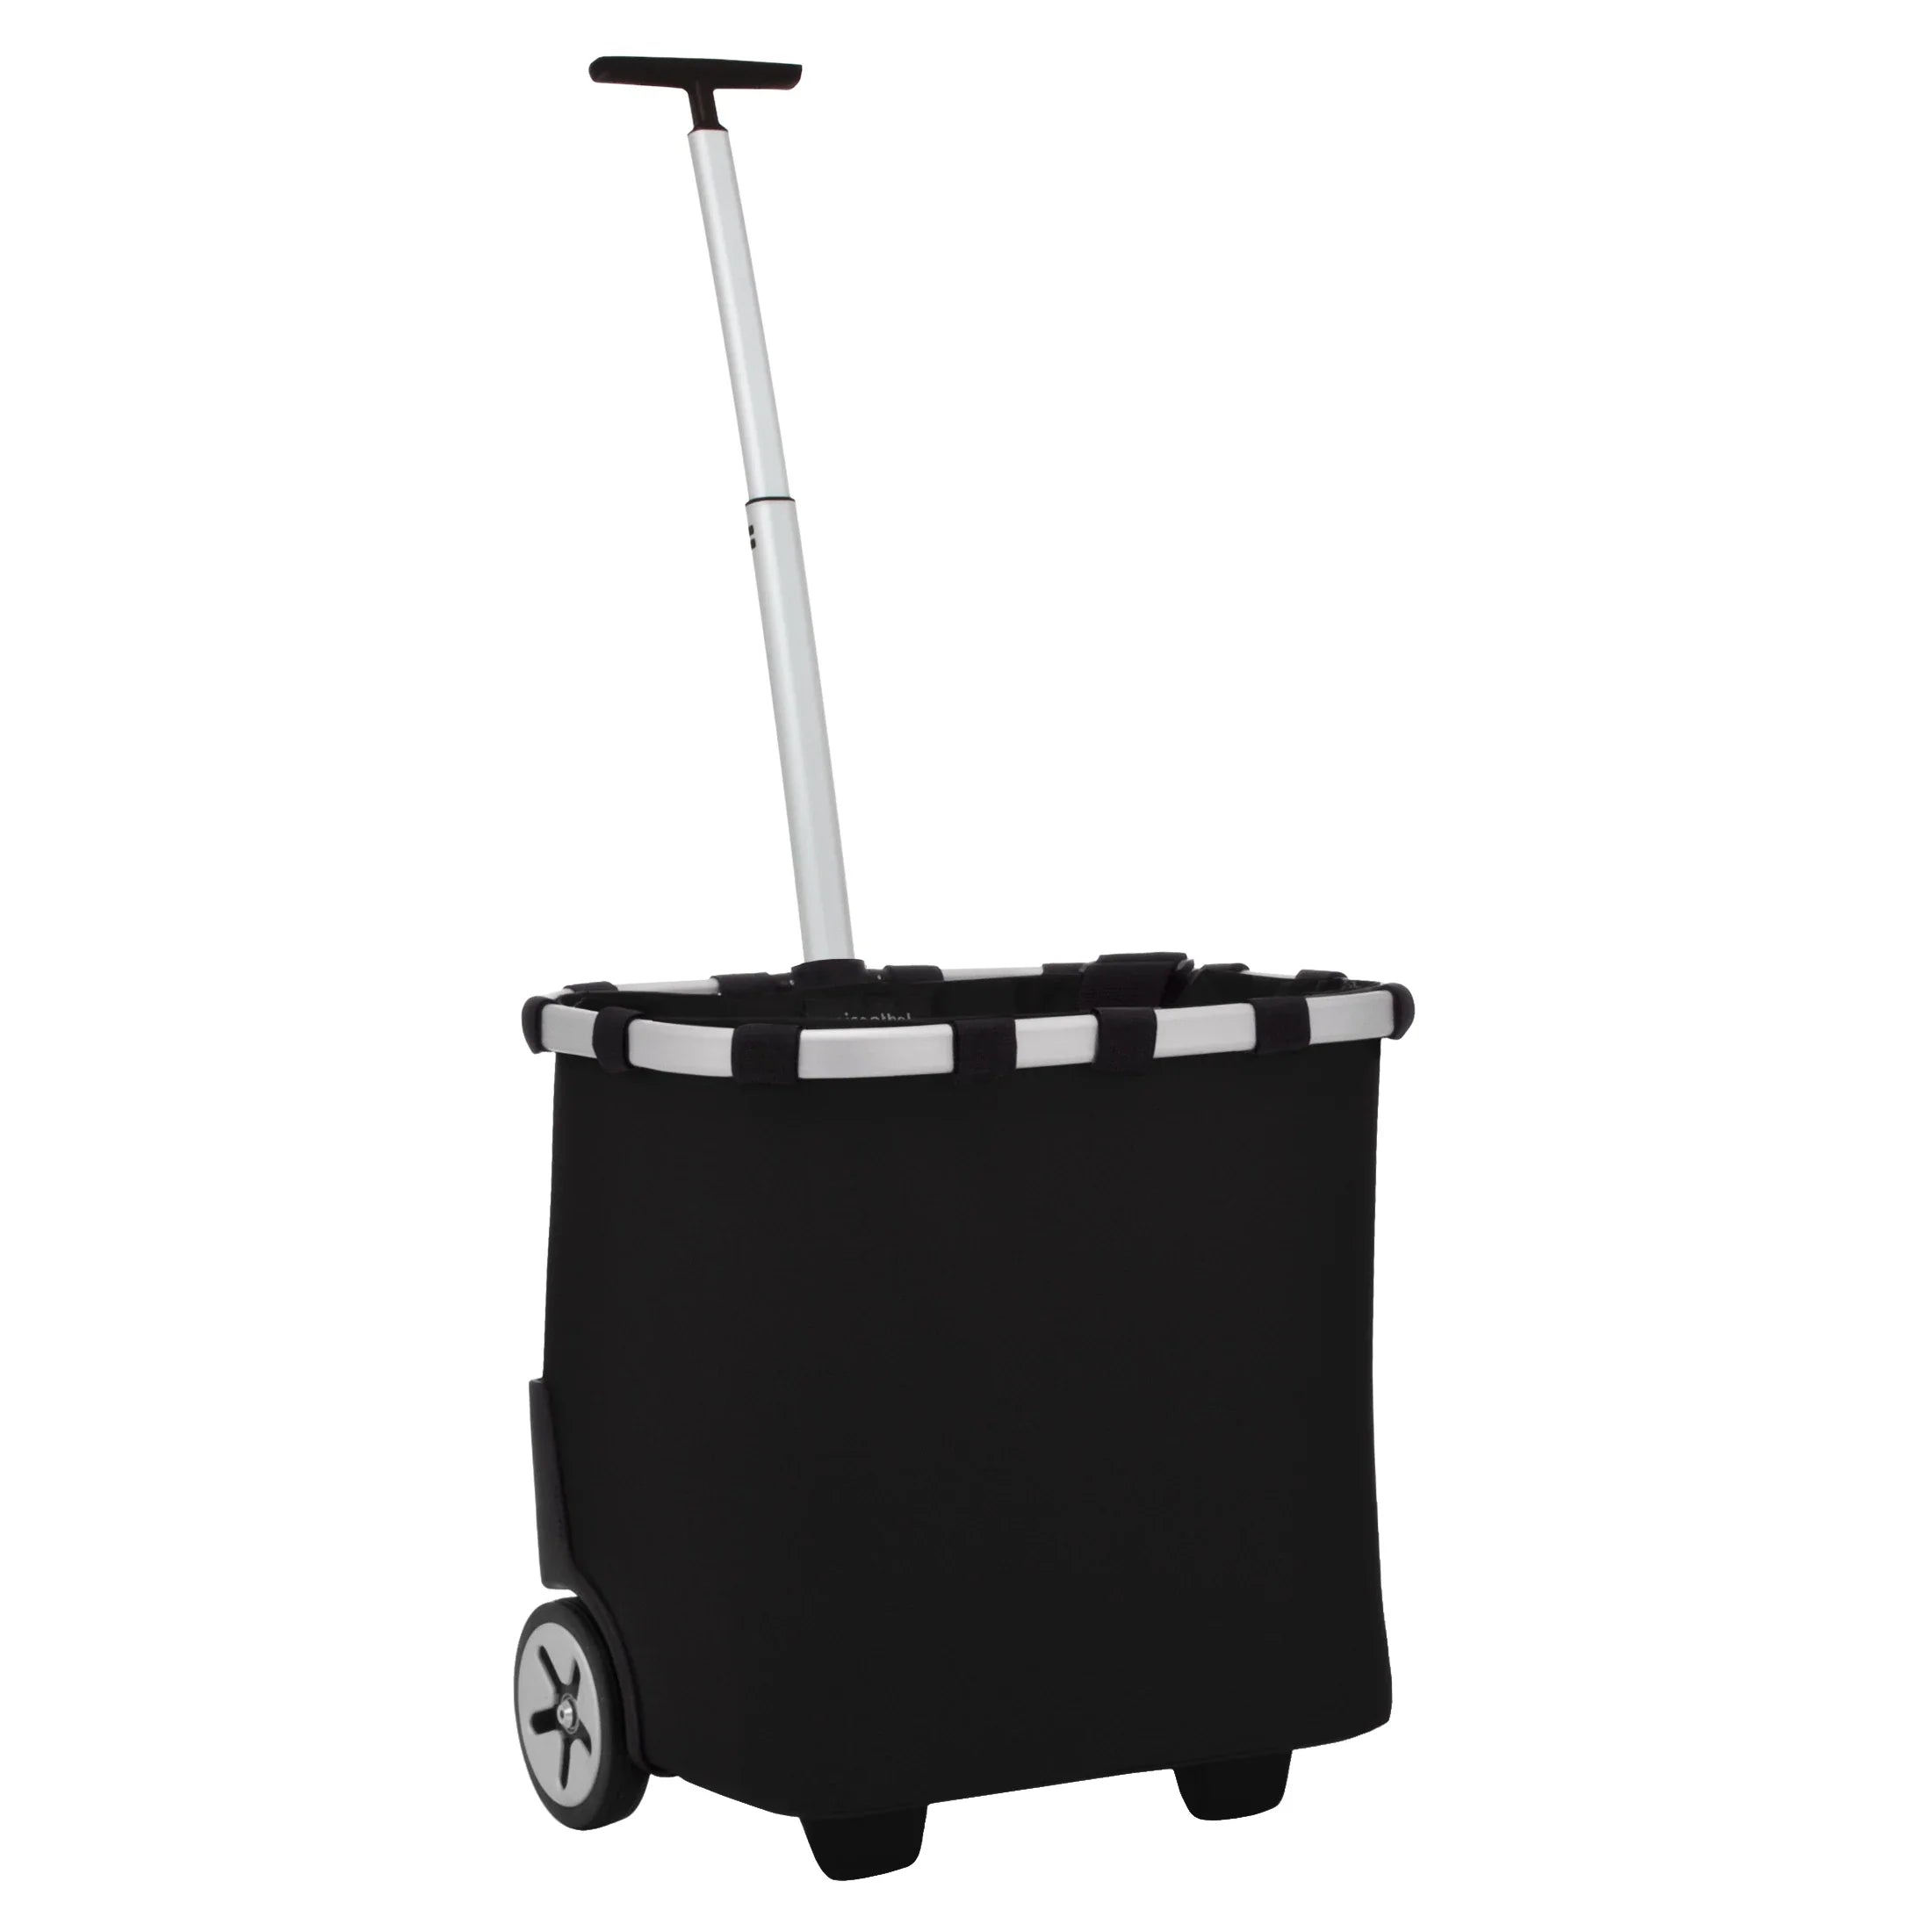 Reisenthel Shopping Carrycruiser shopping basket with wheels 48 cm - black